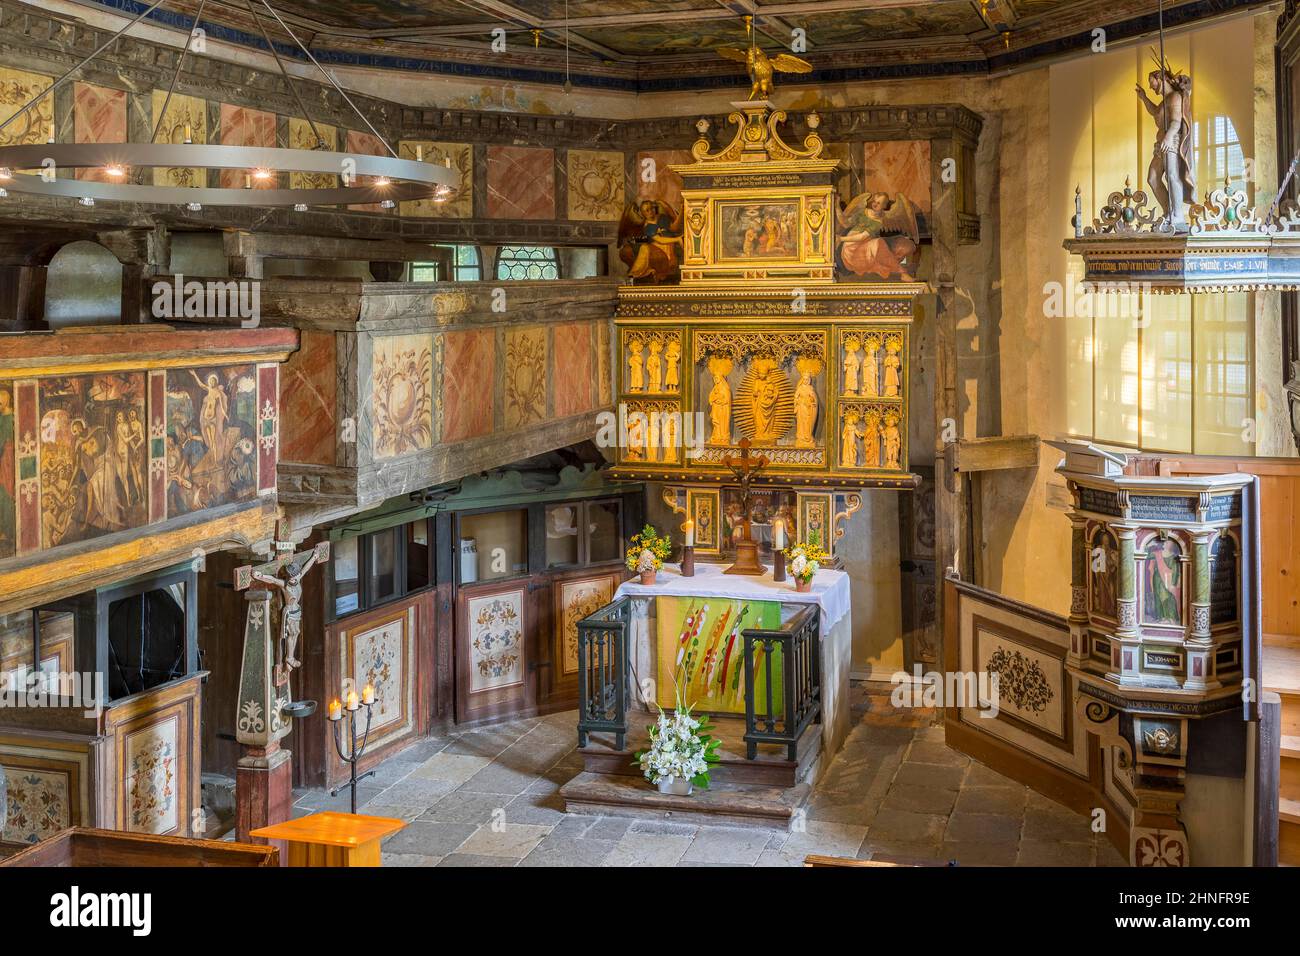 Vue intérieure et autel, vieille église, Coswig, Saxe, Allemagne Banque D'Images